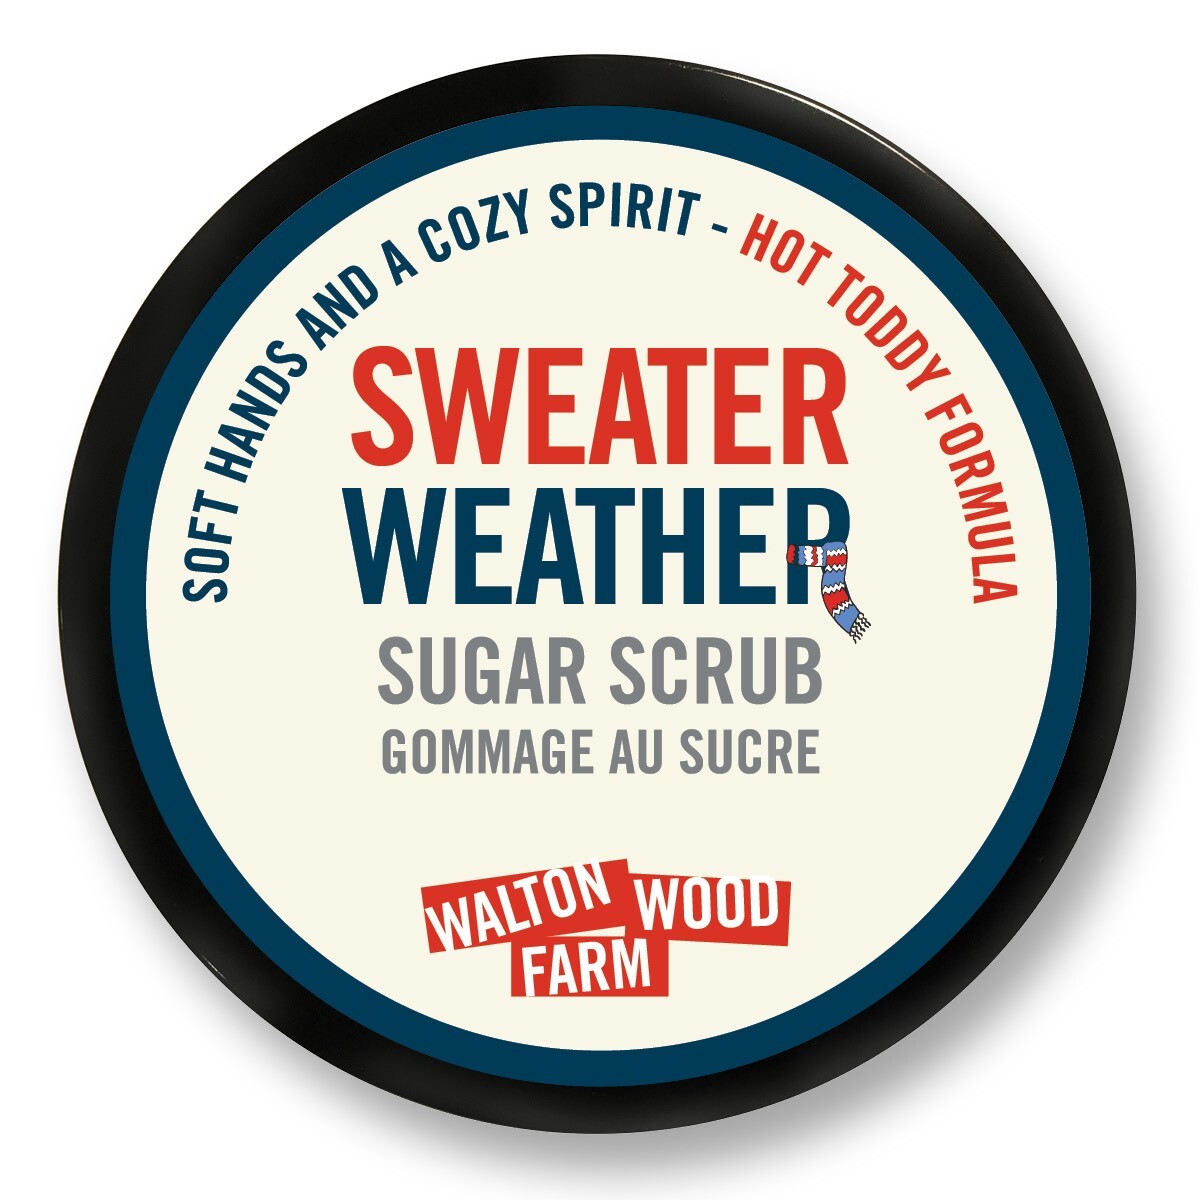 Sweater Weather Sugar Scrub